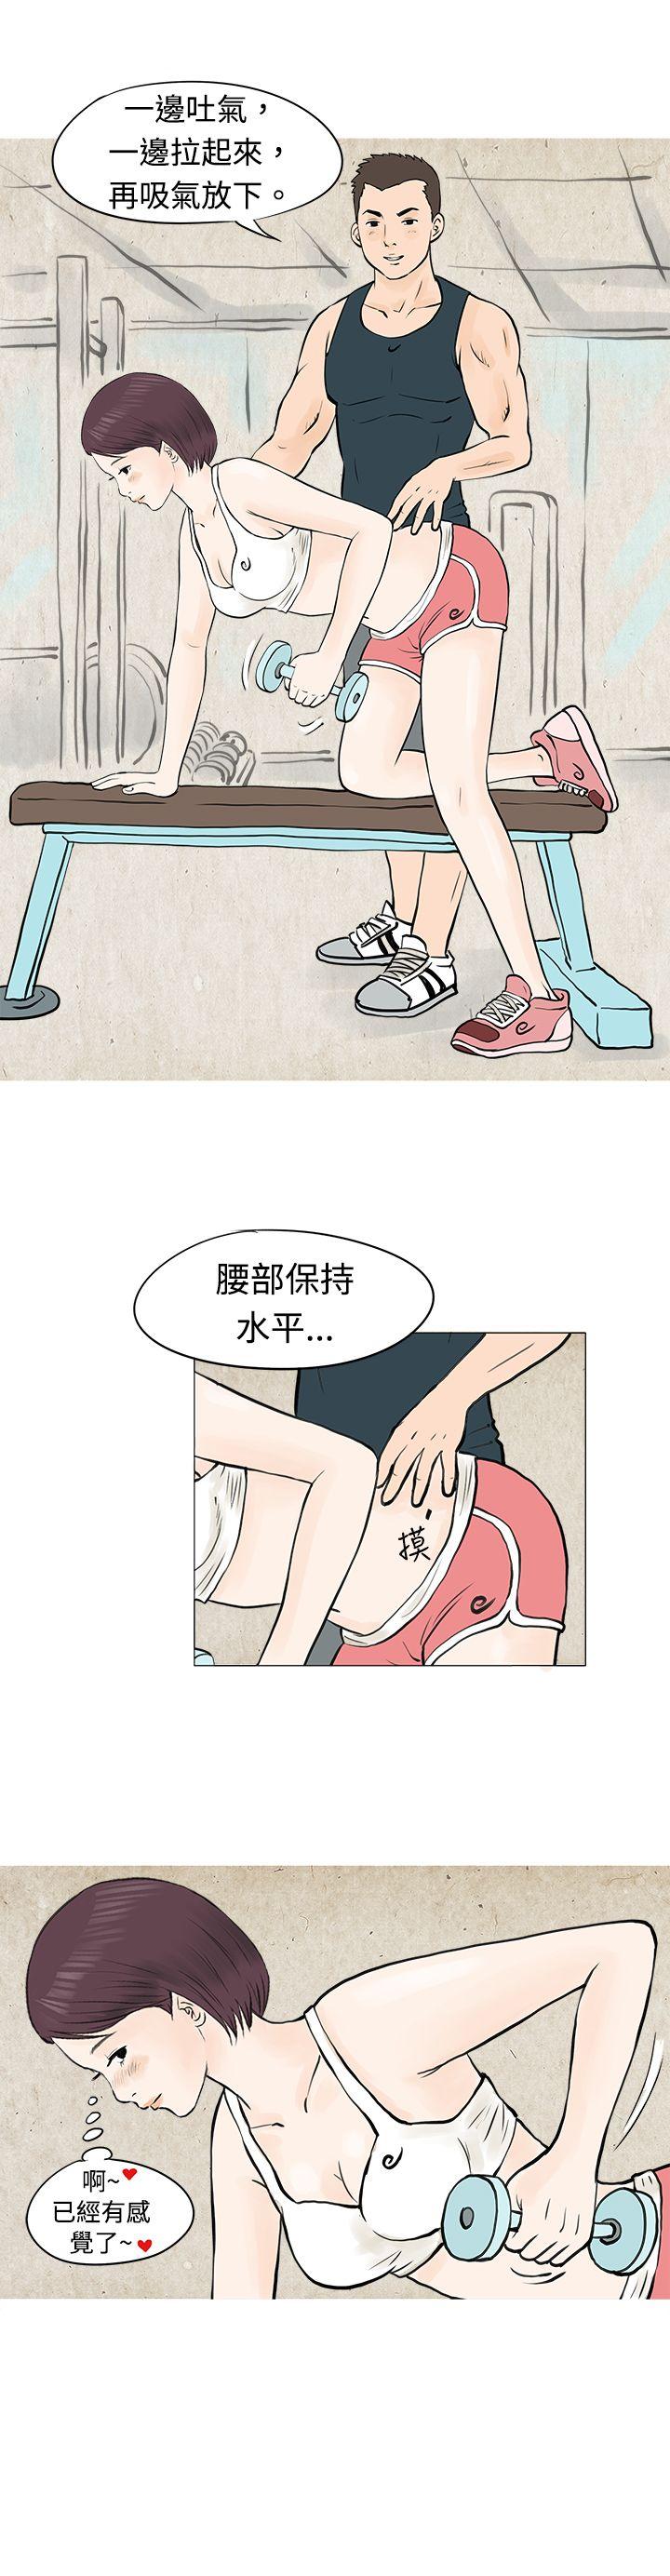 韩国污漫画 秘密Story 到健身房解决需求(下) 2